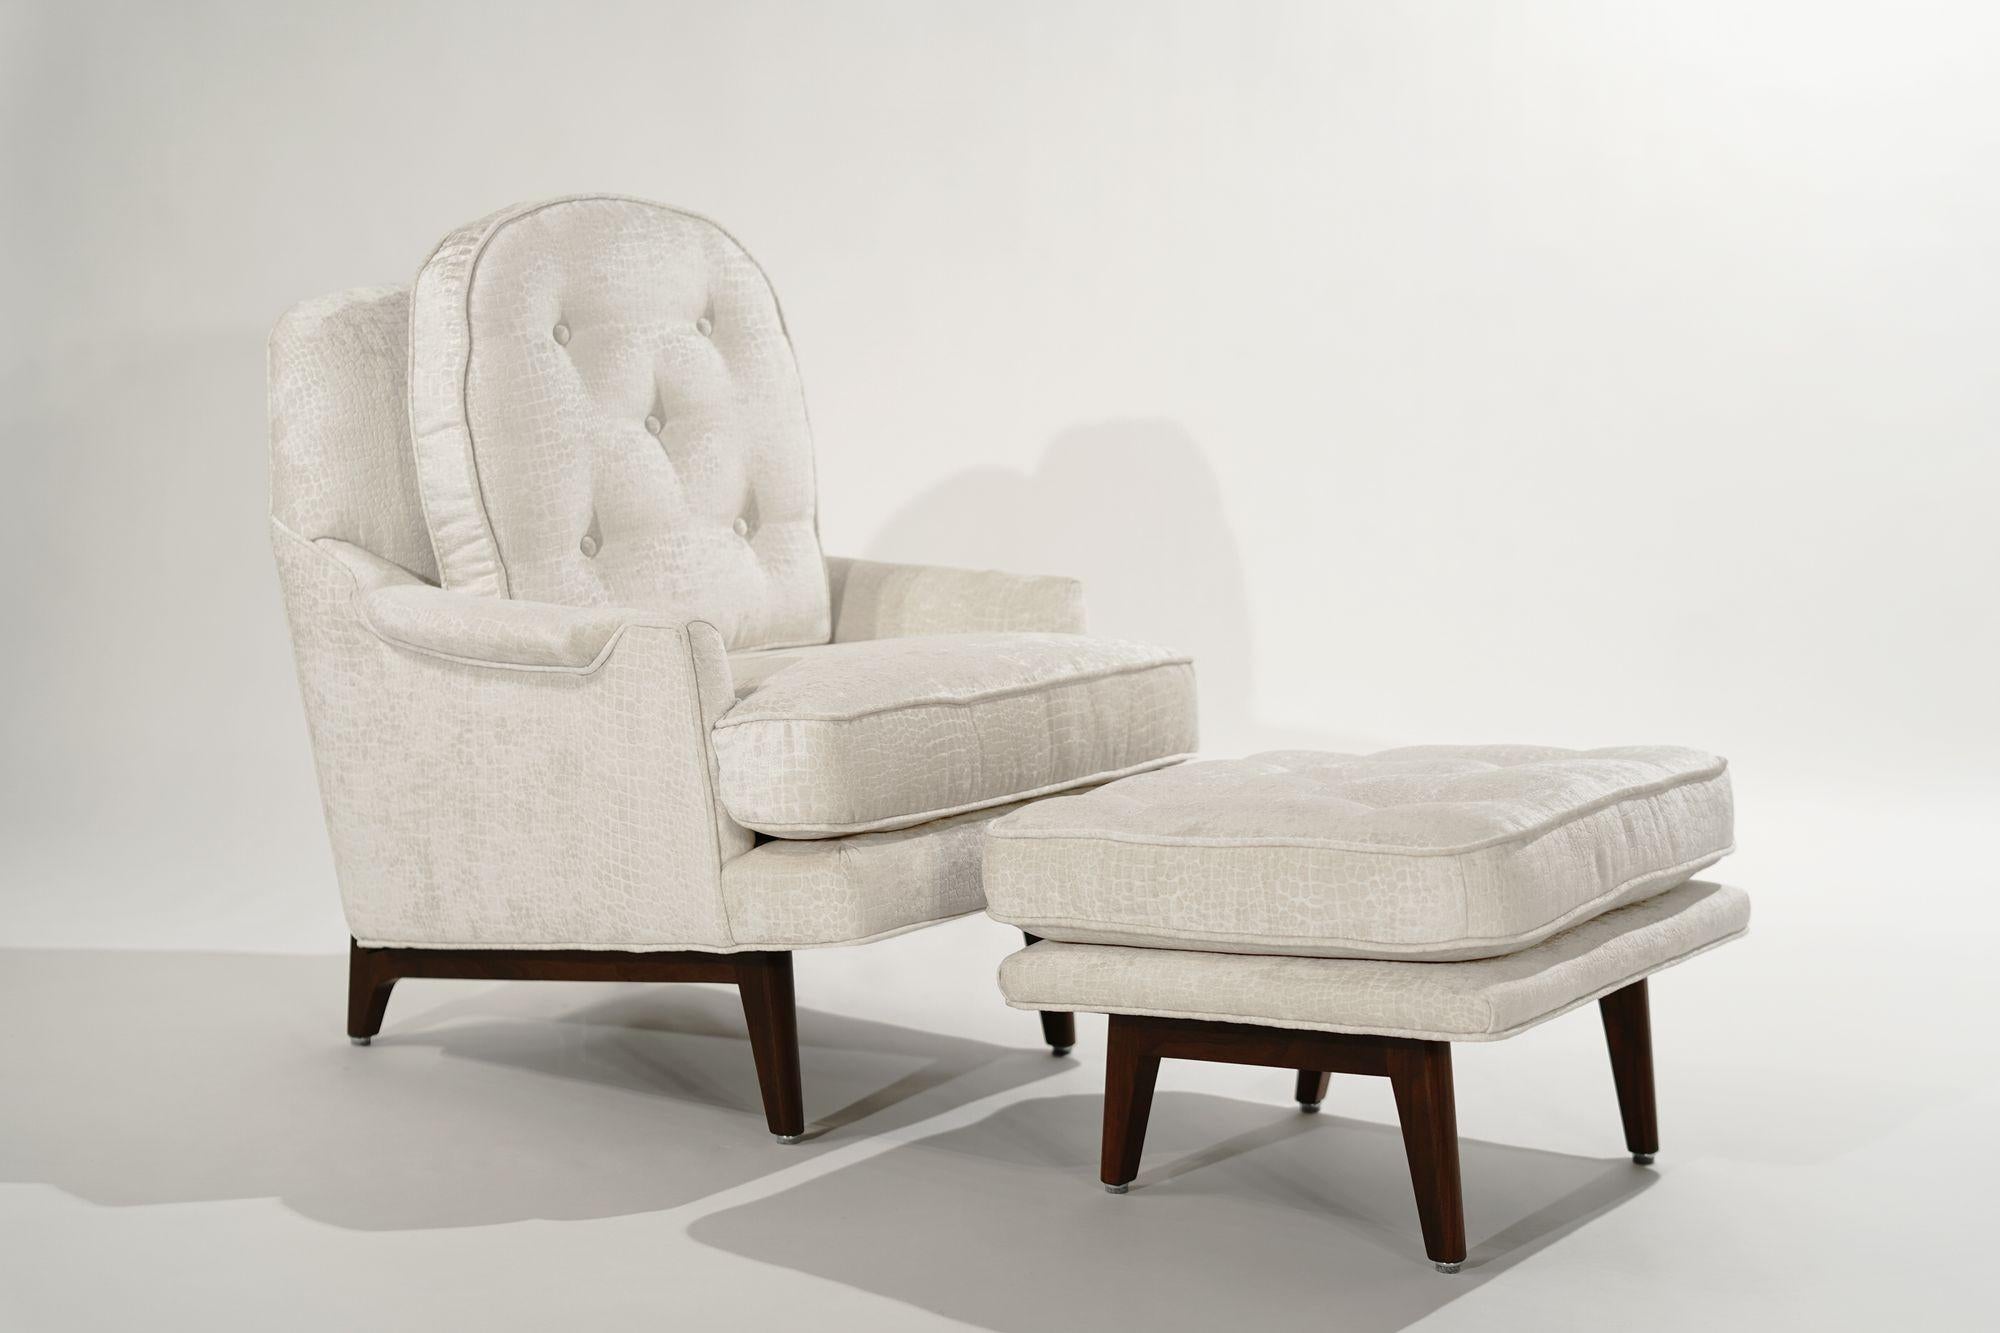 Ensemble historique de chaise longue et d'ottoman conçu par Edward Wormley pour Dunbar, vers 1950-1959. Entièrement restauré, retapissé en velours gaufré par Holly Hunt. Noyer refini en noyer moyen.
 
Parmi les autres designers de cette période,